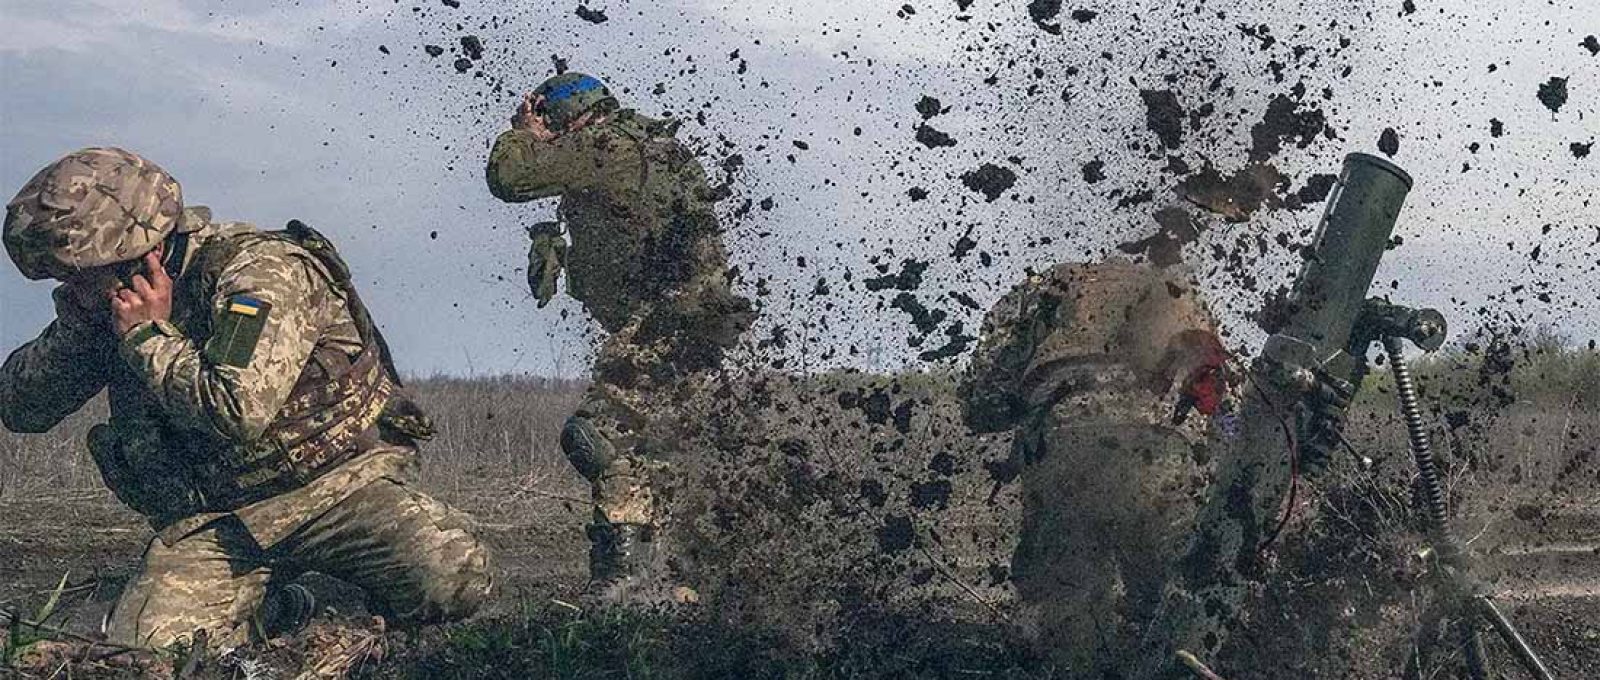 Soldados ucranianos operam perto de Ugledar, Donetsk, em abril de 2023 (Muhammed Enes Yildirim/Agência Anadolu via Getty Images).